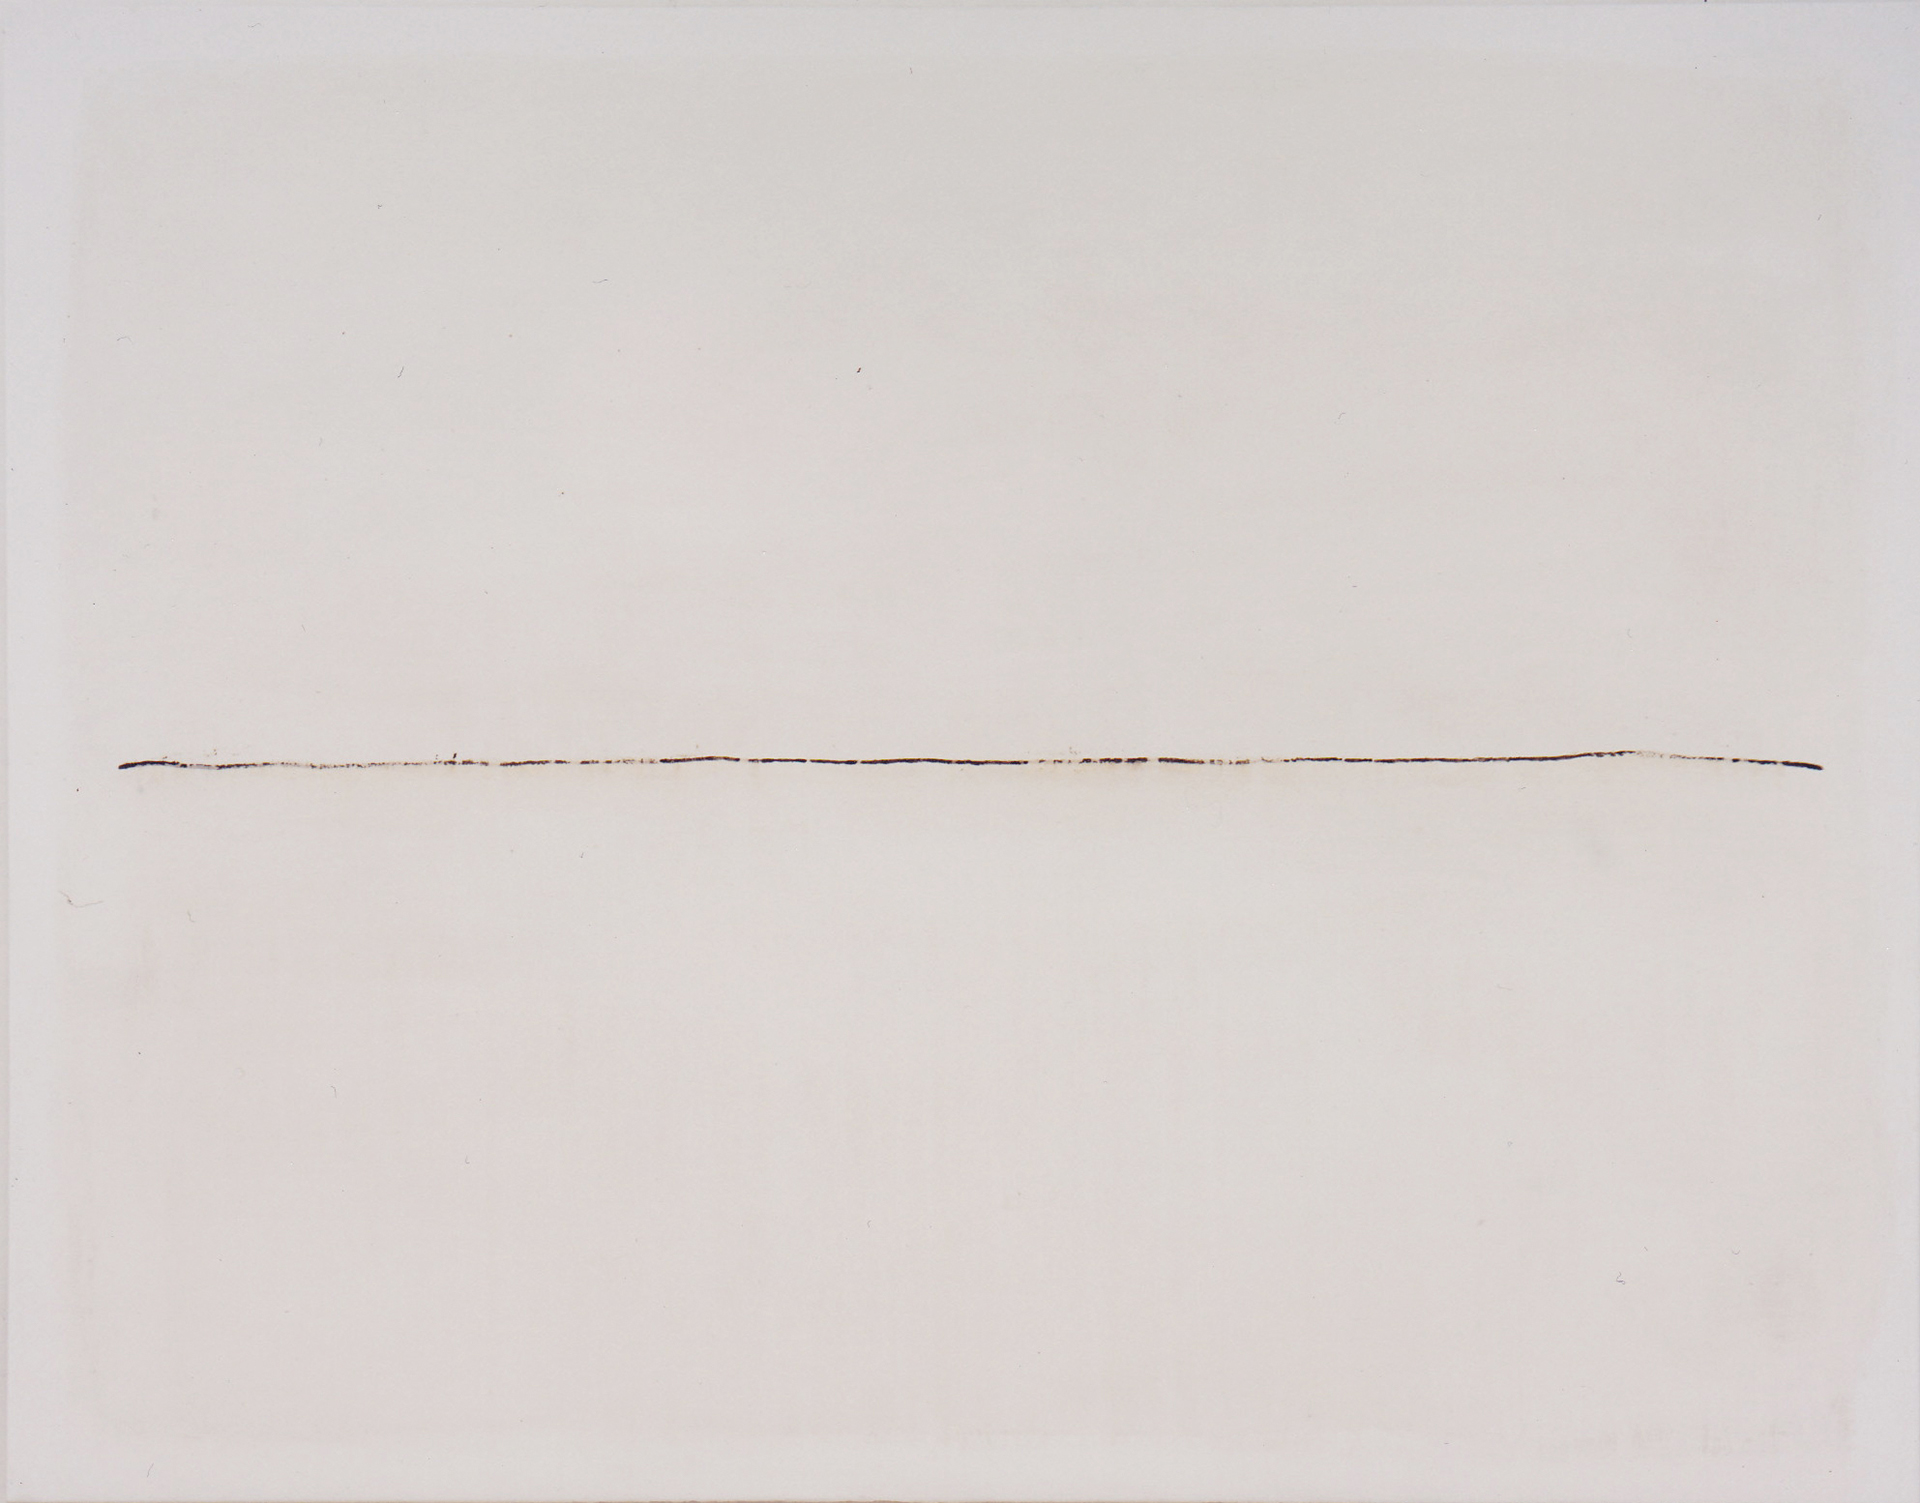 Lilo Rinkens, Dritte Linie, 1999, Acryl und Tusche auf Leinwand, 140 x 180 cm